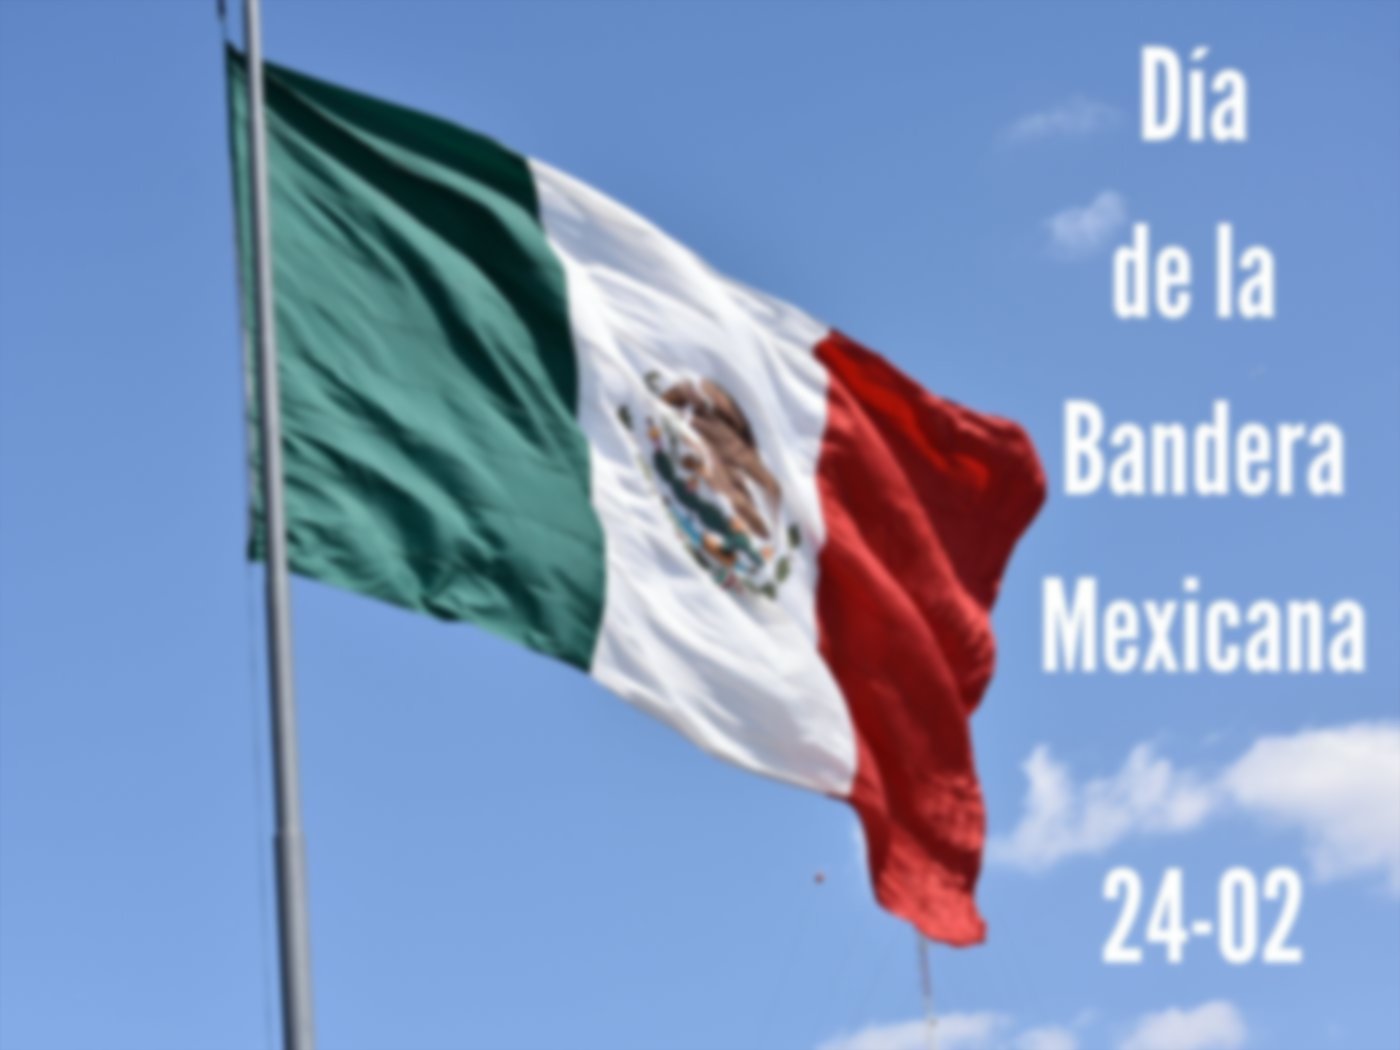 Día de la Bandera Mexicana